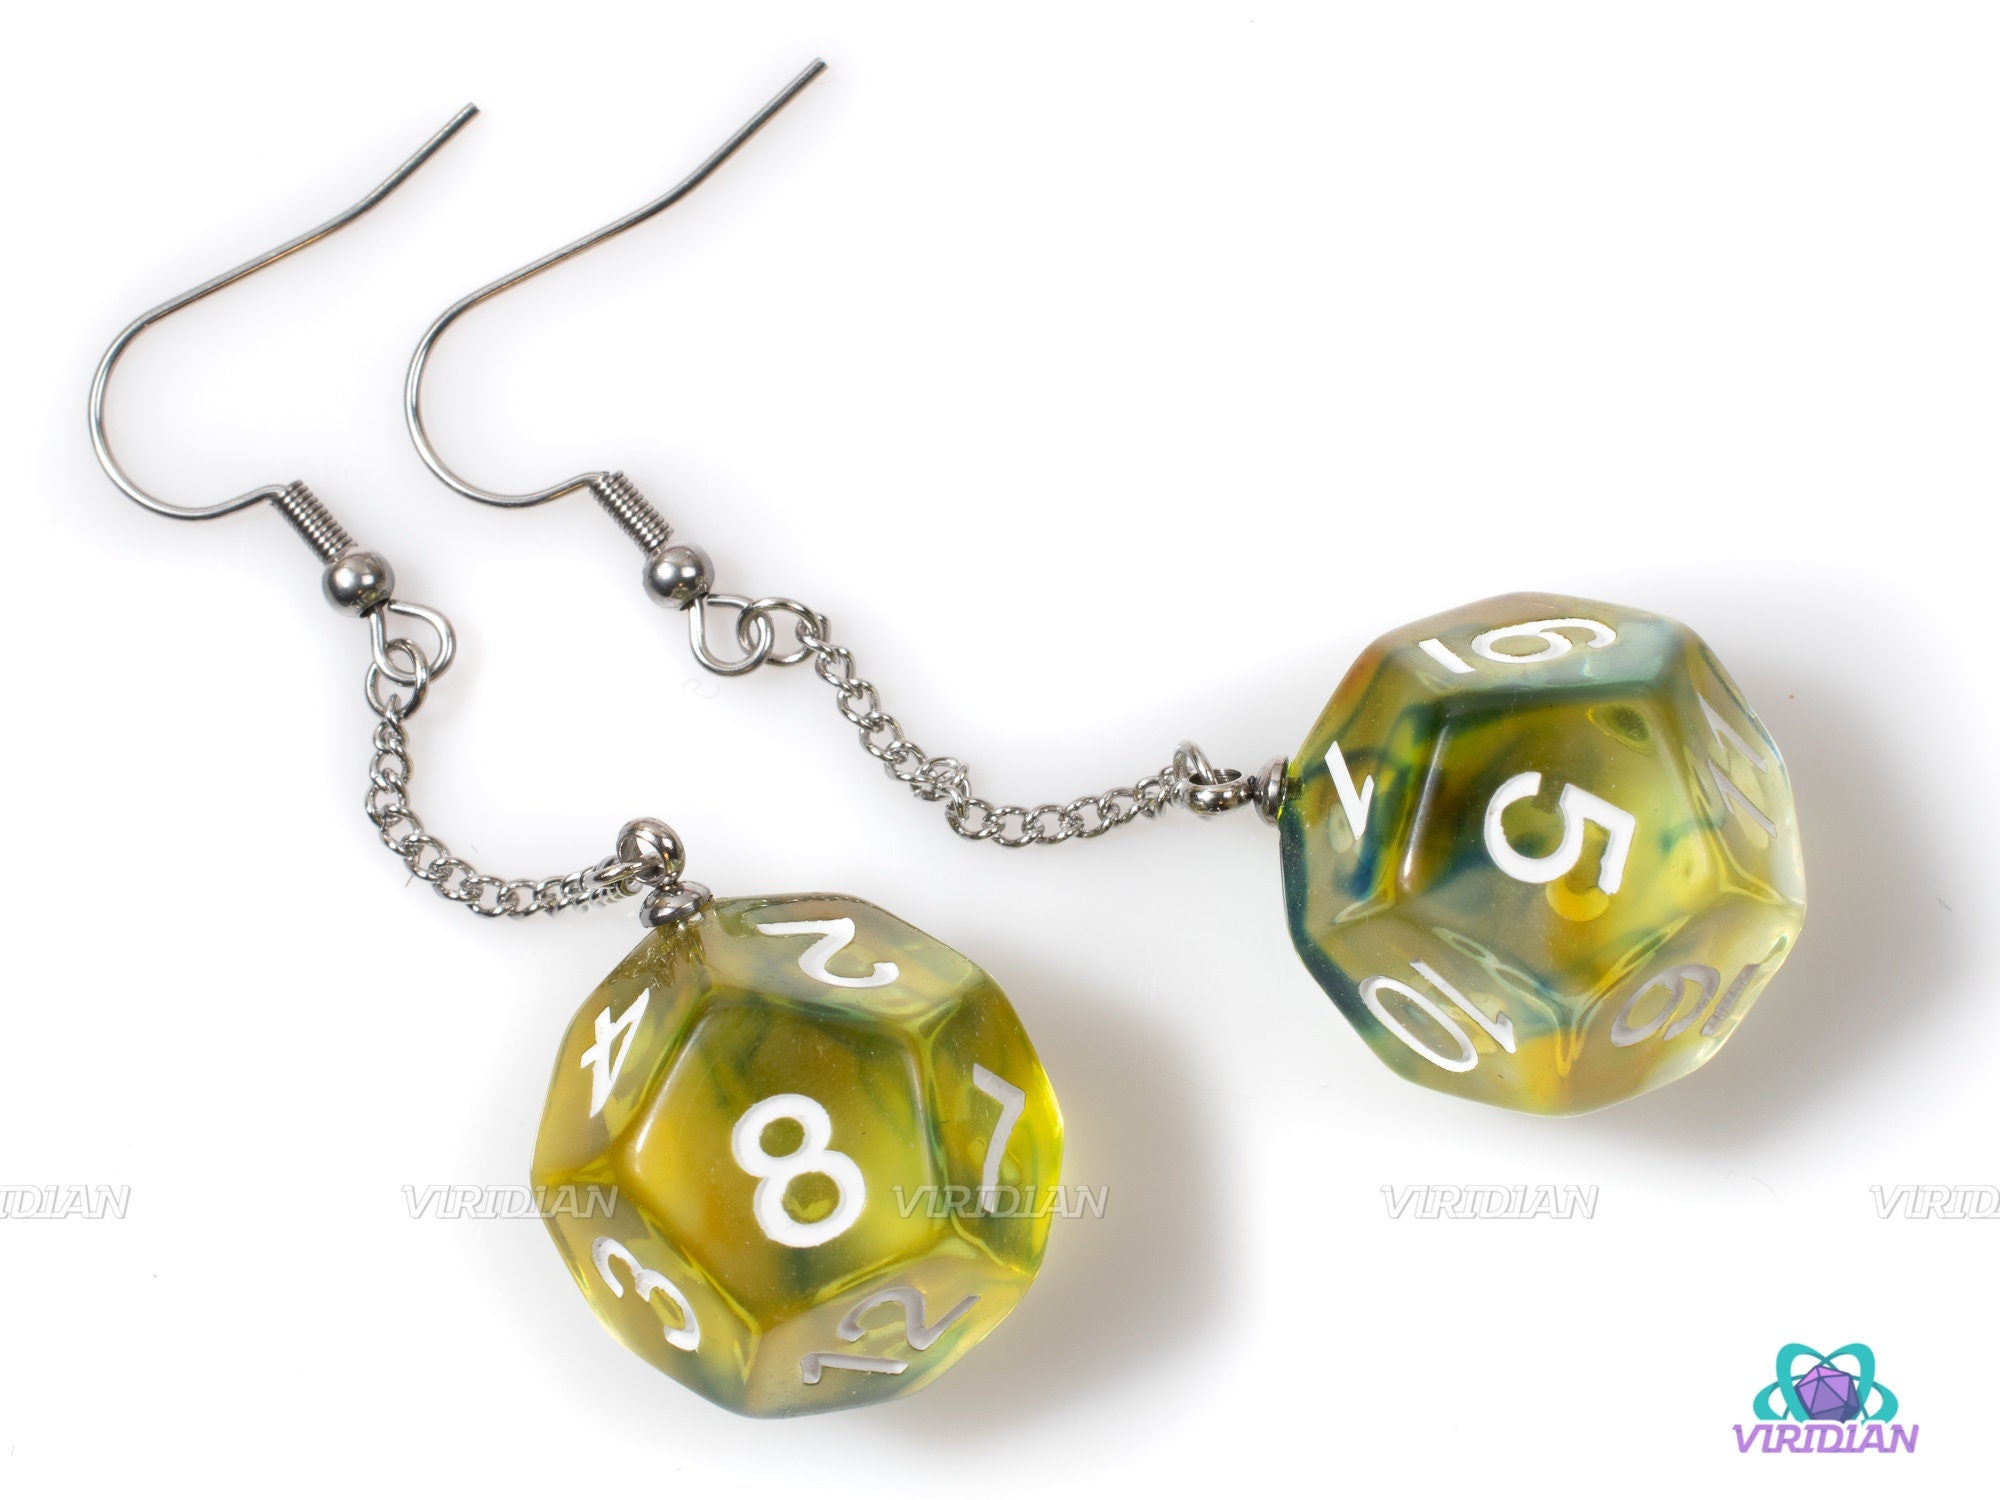 D12 Pendant Earrings | Yellow, Green-Blue, Clear Swirls | Resin D12 Dice Jewelry